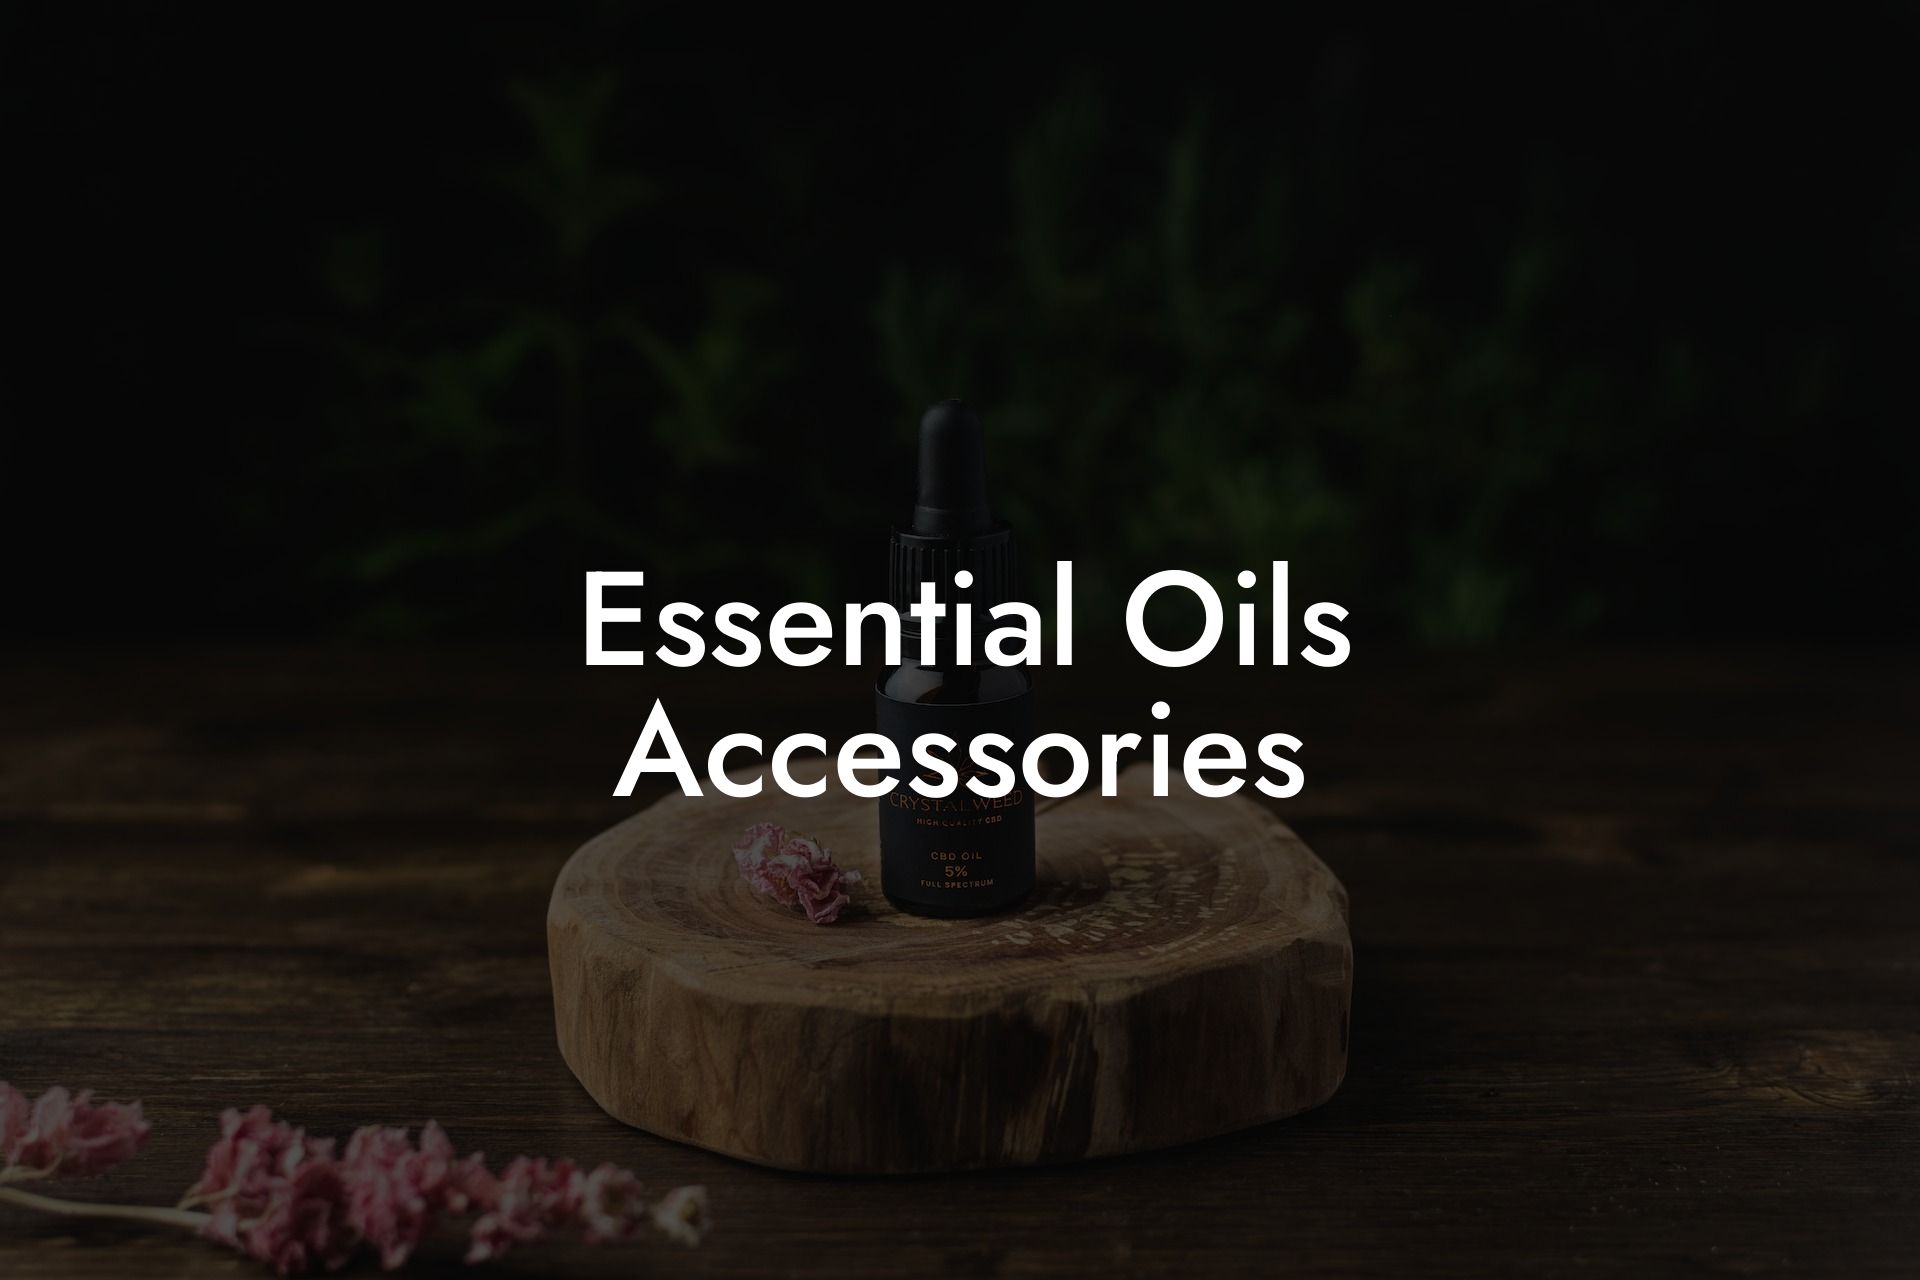 Essential Oils Accessories